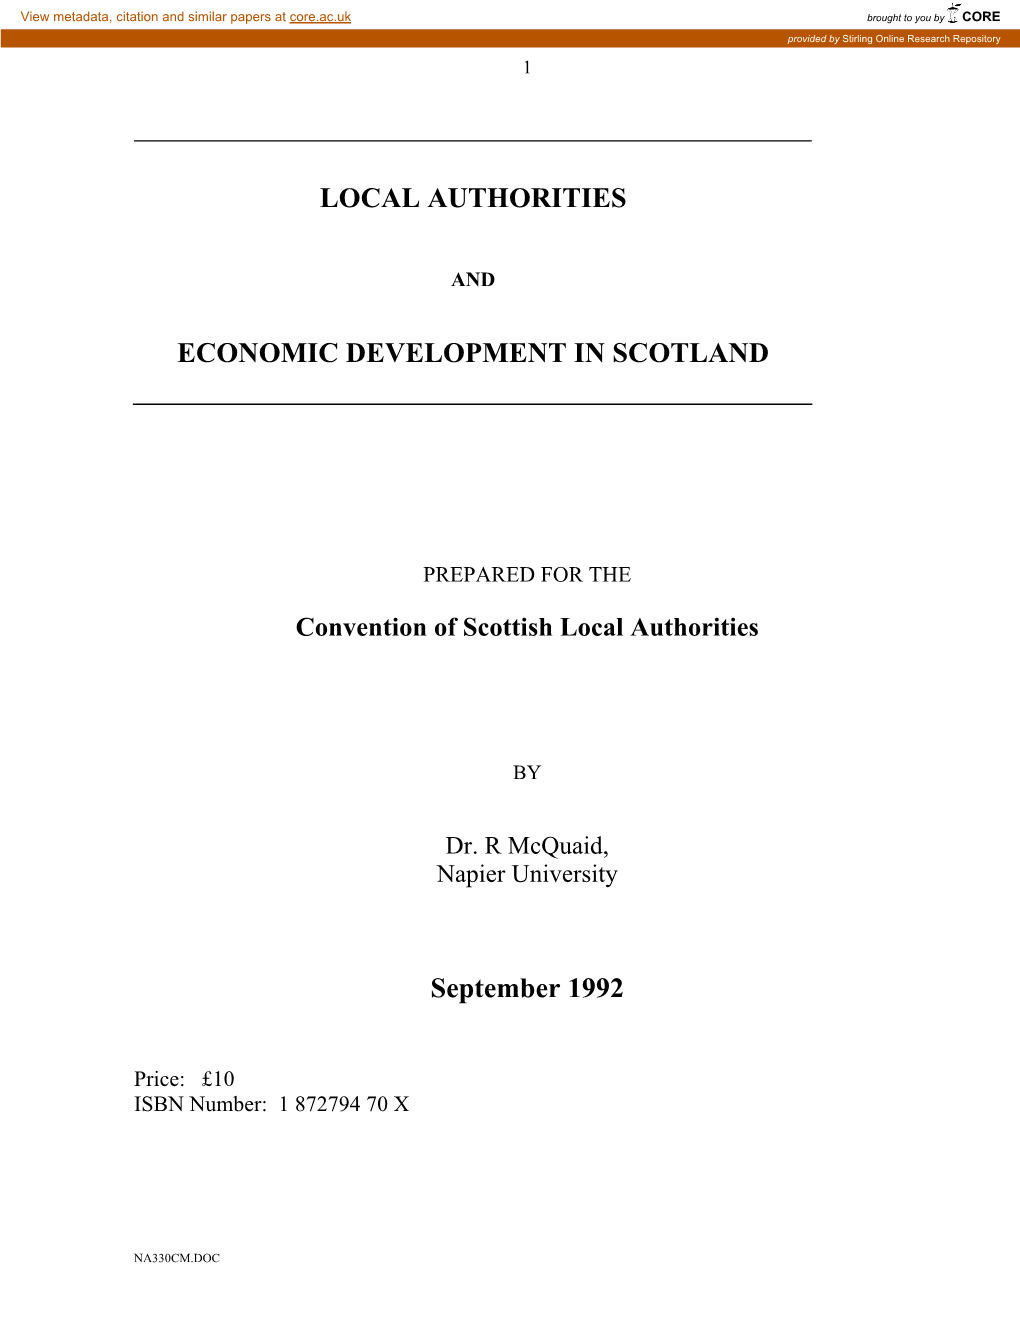 Local Authorities Economic Development in Scotland